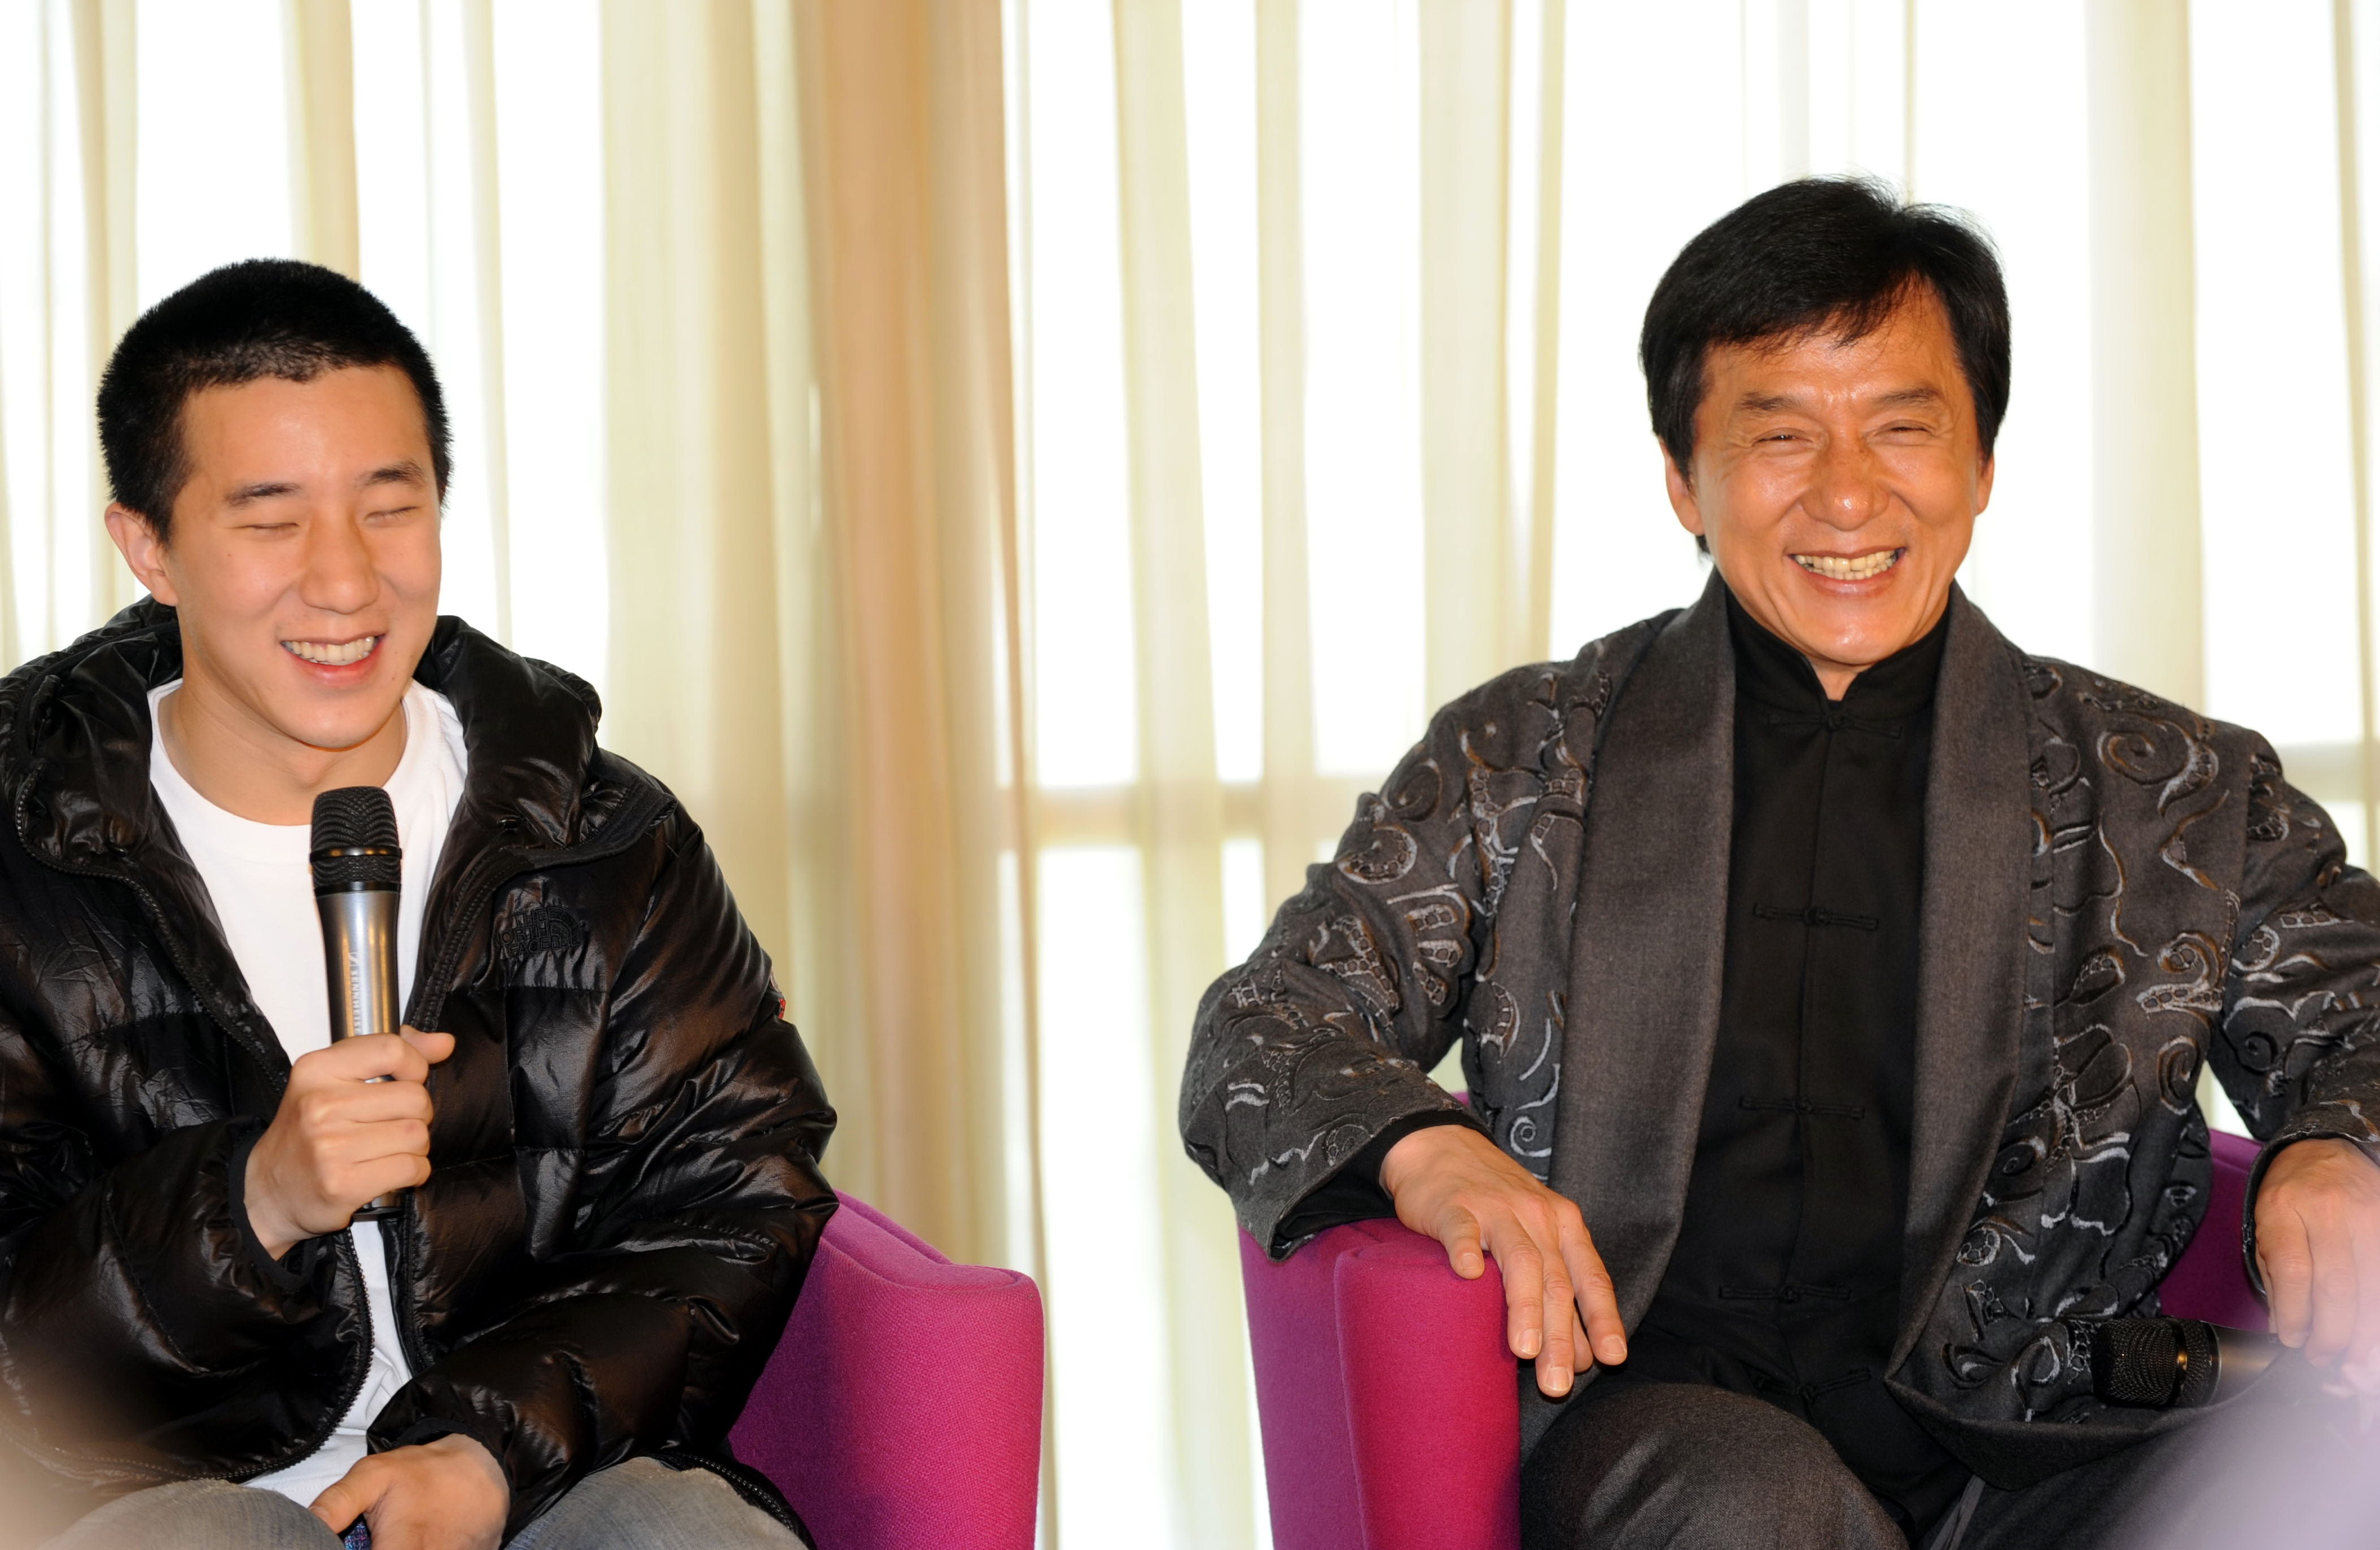 Jackie Chan et son fils Jaycee Chan le 1er avril 2009 à Pékin, Chine | Source : Getty Images